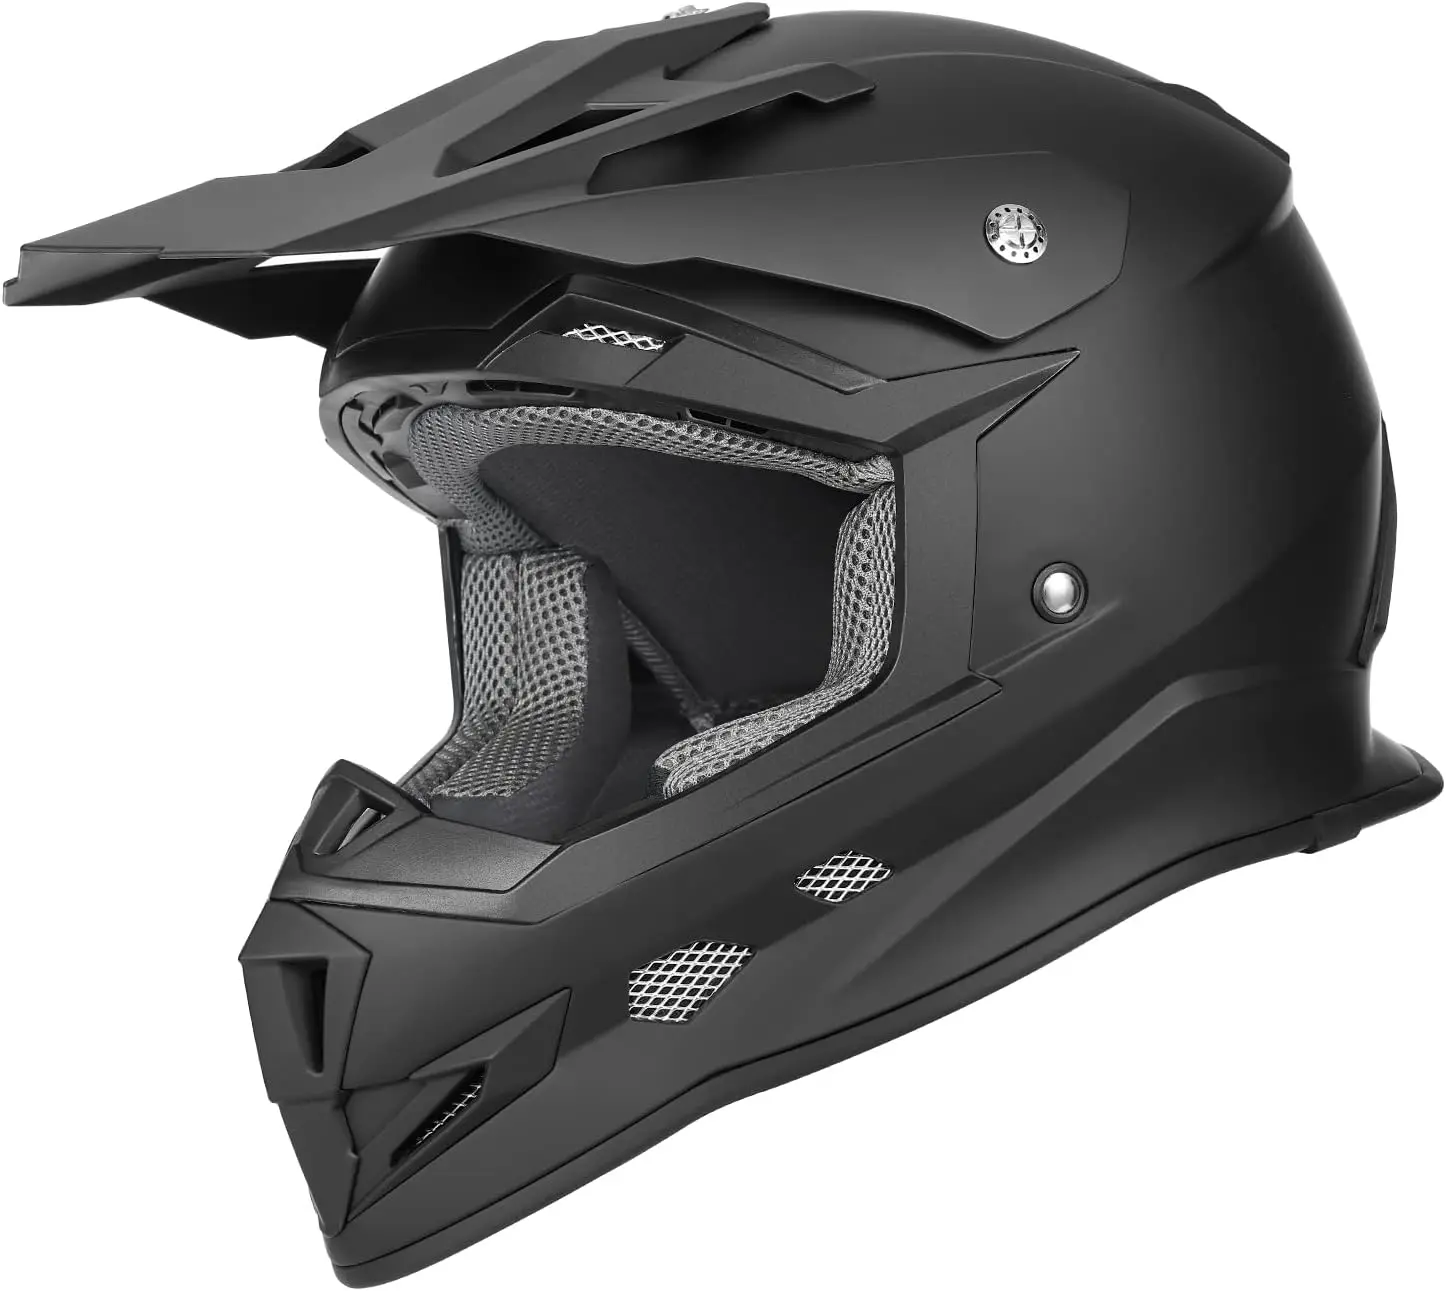 

GX23 Dirt Bike Off-Road Motocross ATV Motorcycle Full Face Helmet for Men Women, DOT Approved (Sear Green, Large)